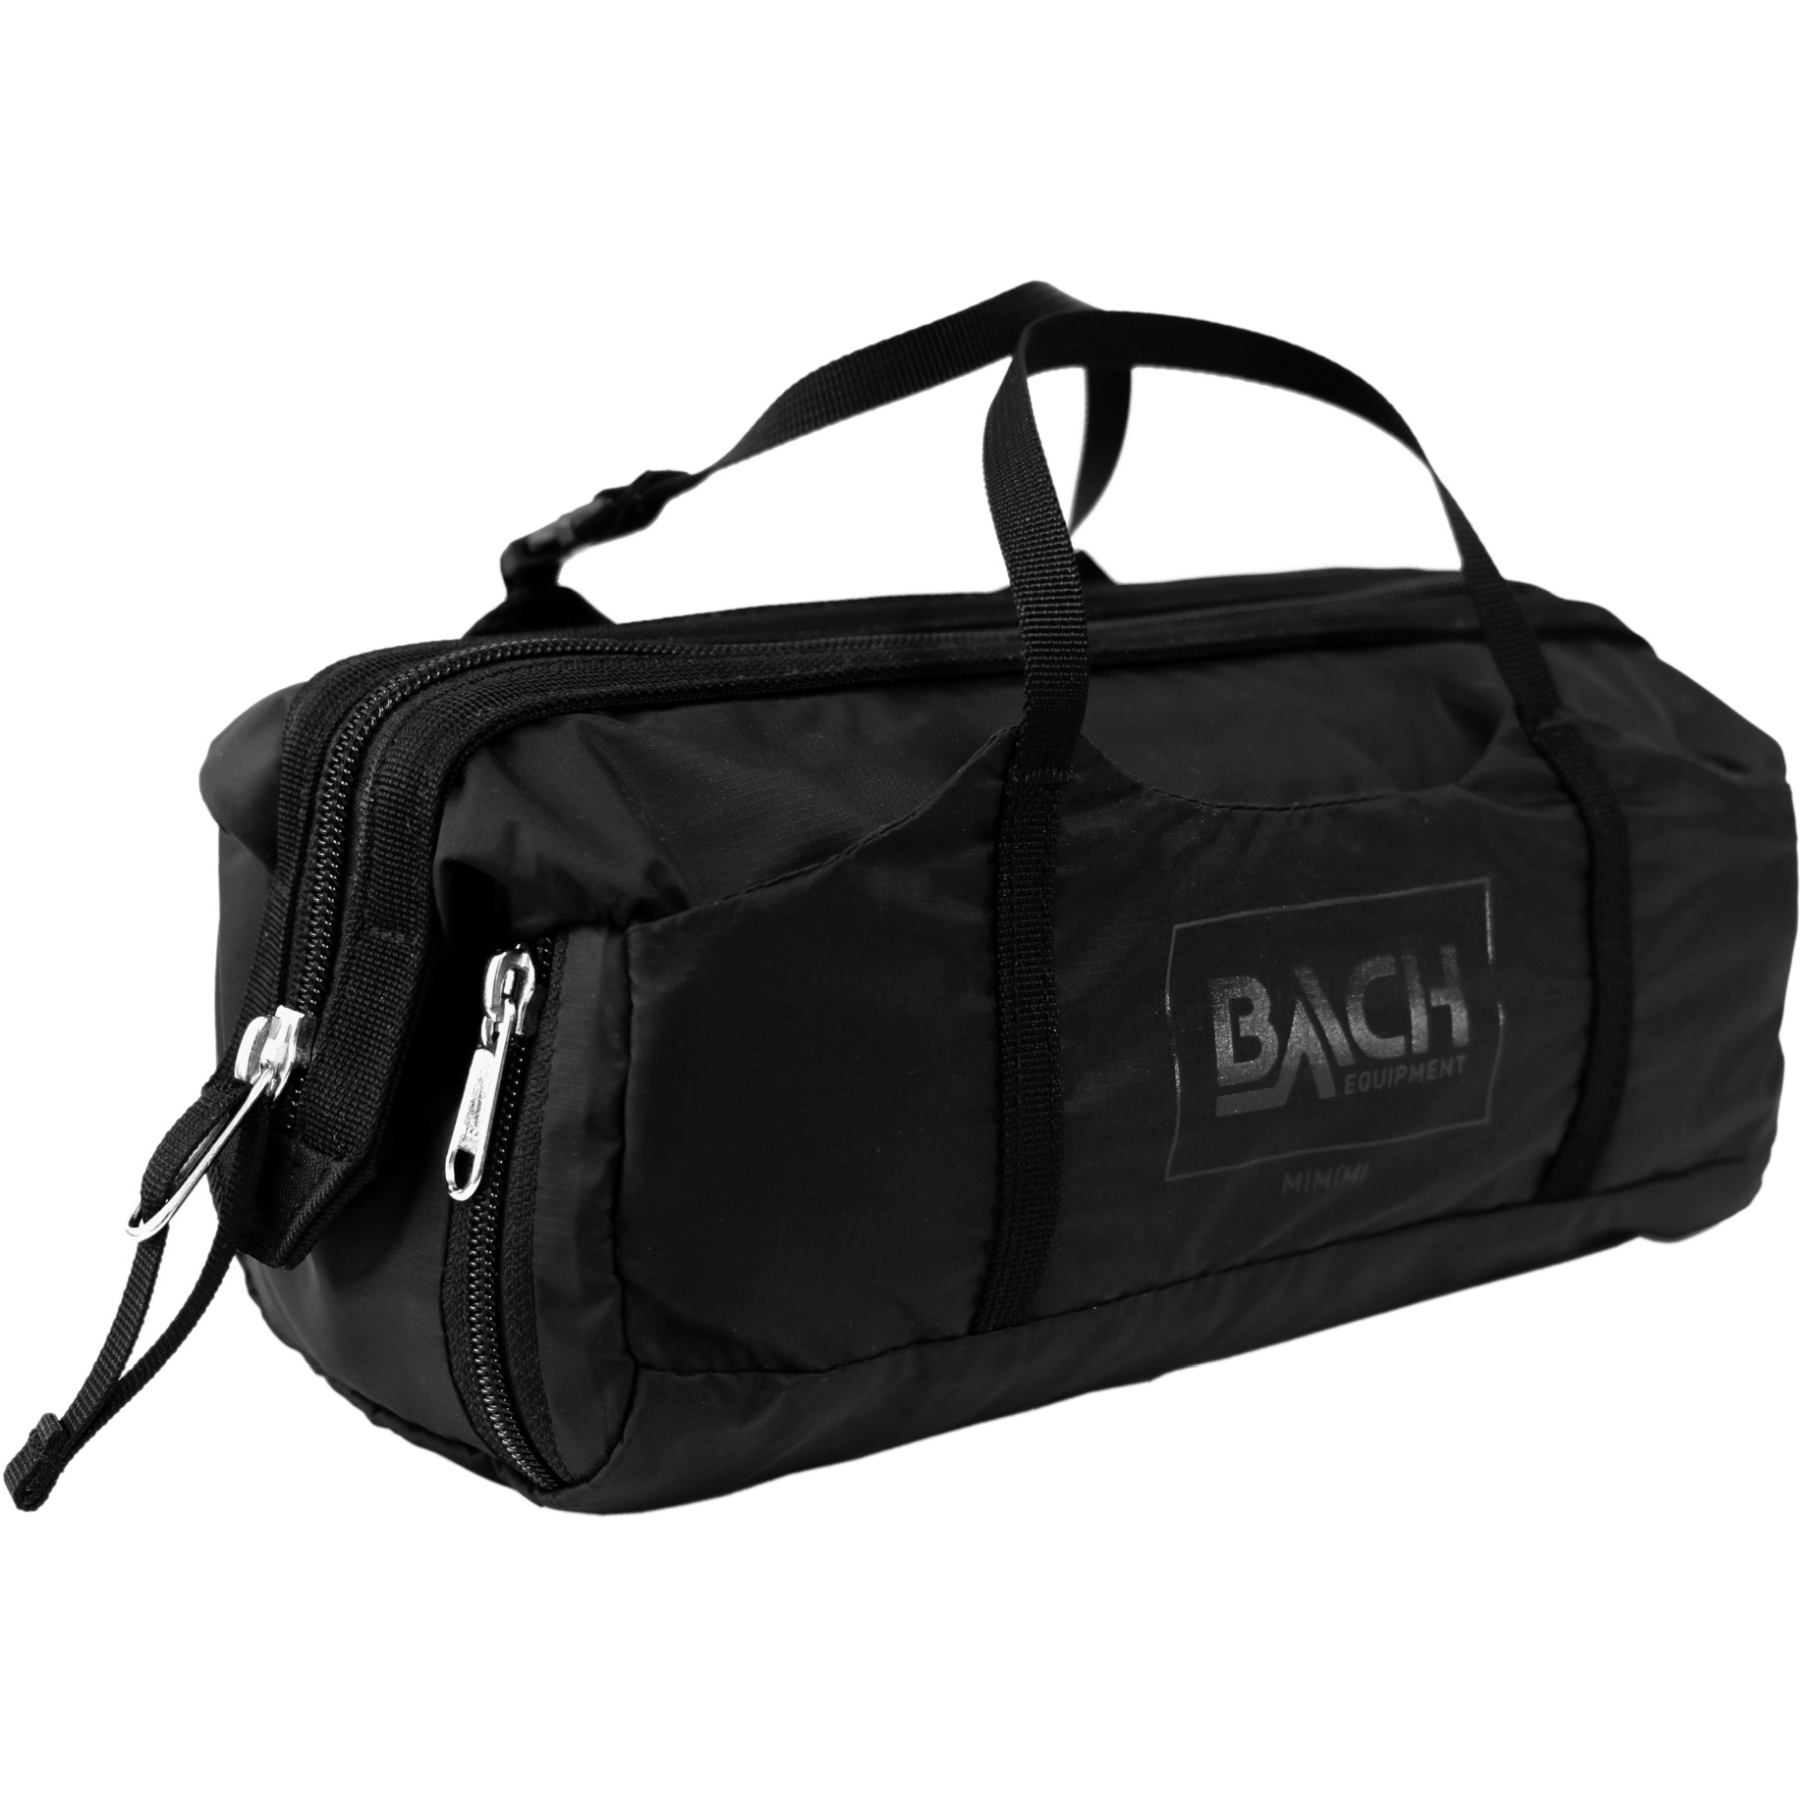 Produktbild von Bach Mimimi Bag M - Kulturtasche - black